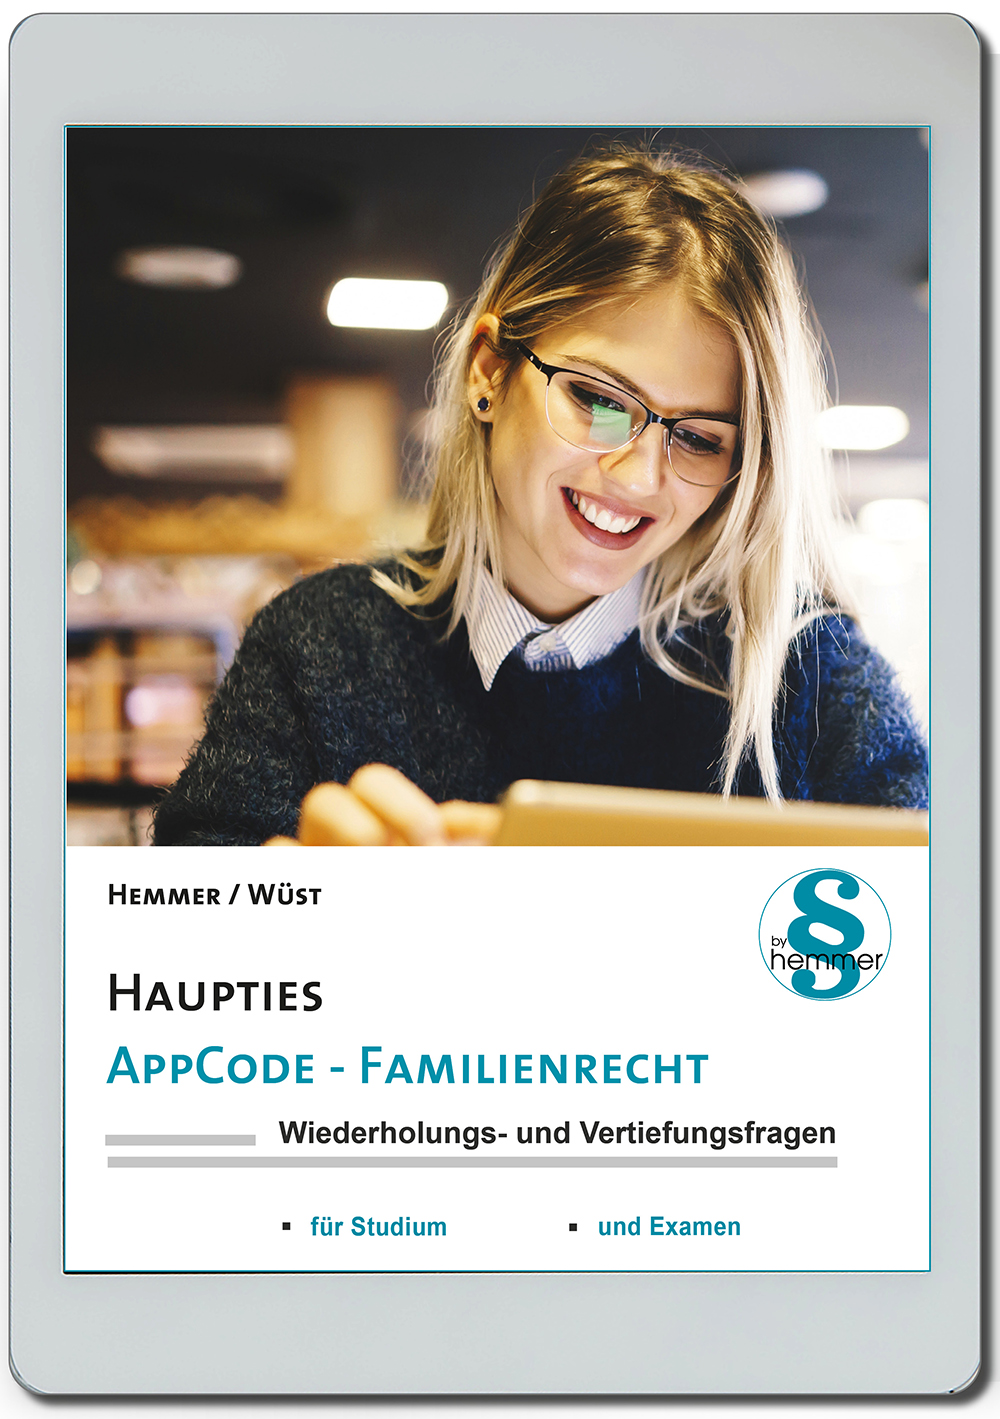 AppCode - haupties - Familienrecht